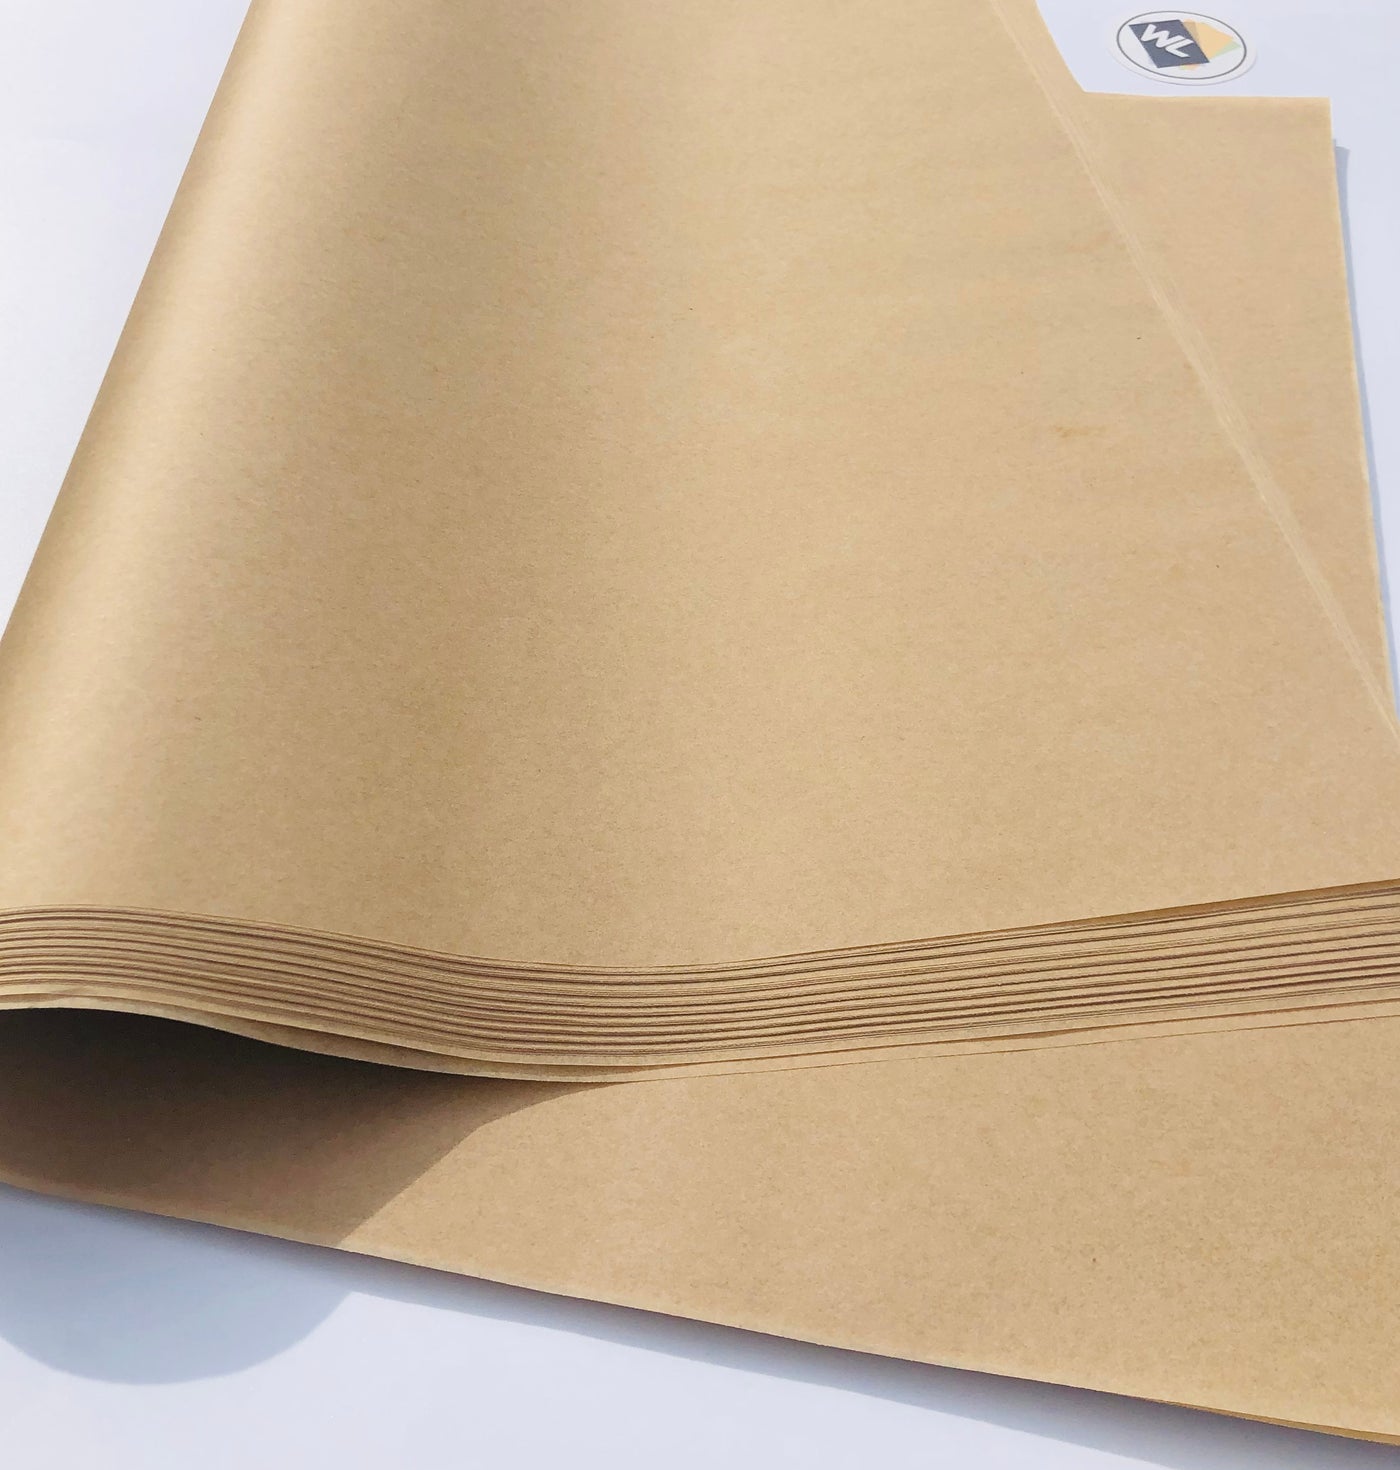 16x24 Premium Parchment Heat Transfer Sheets 50 pack